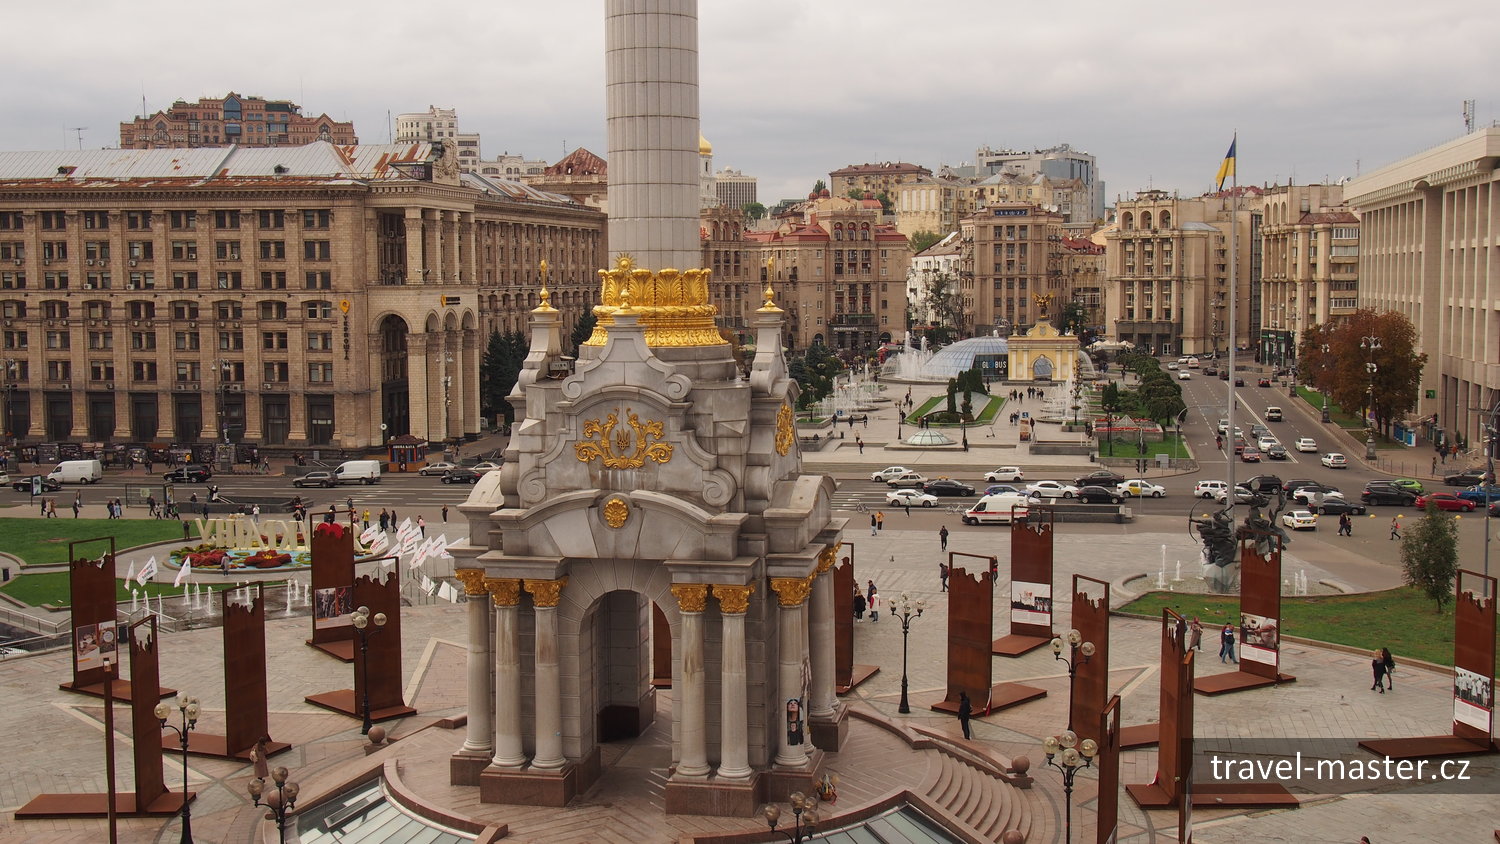 Náměstí Nezávislosti, neboli slavný Majdan